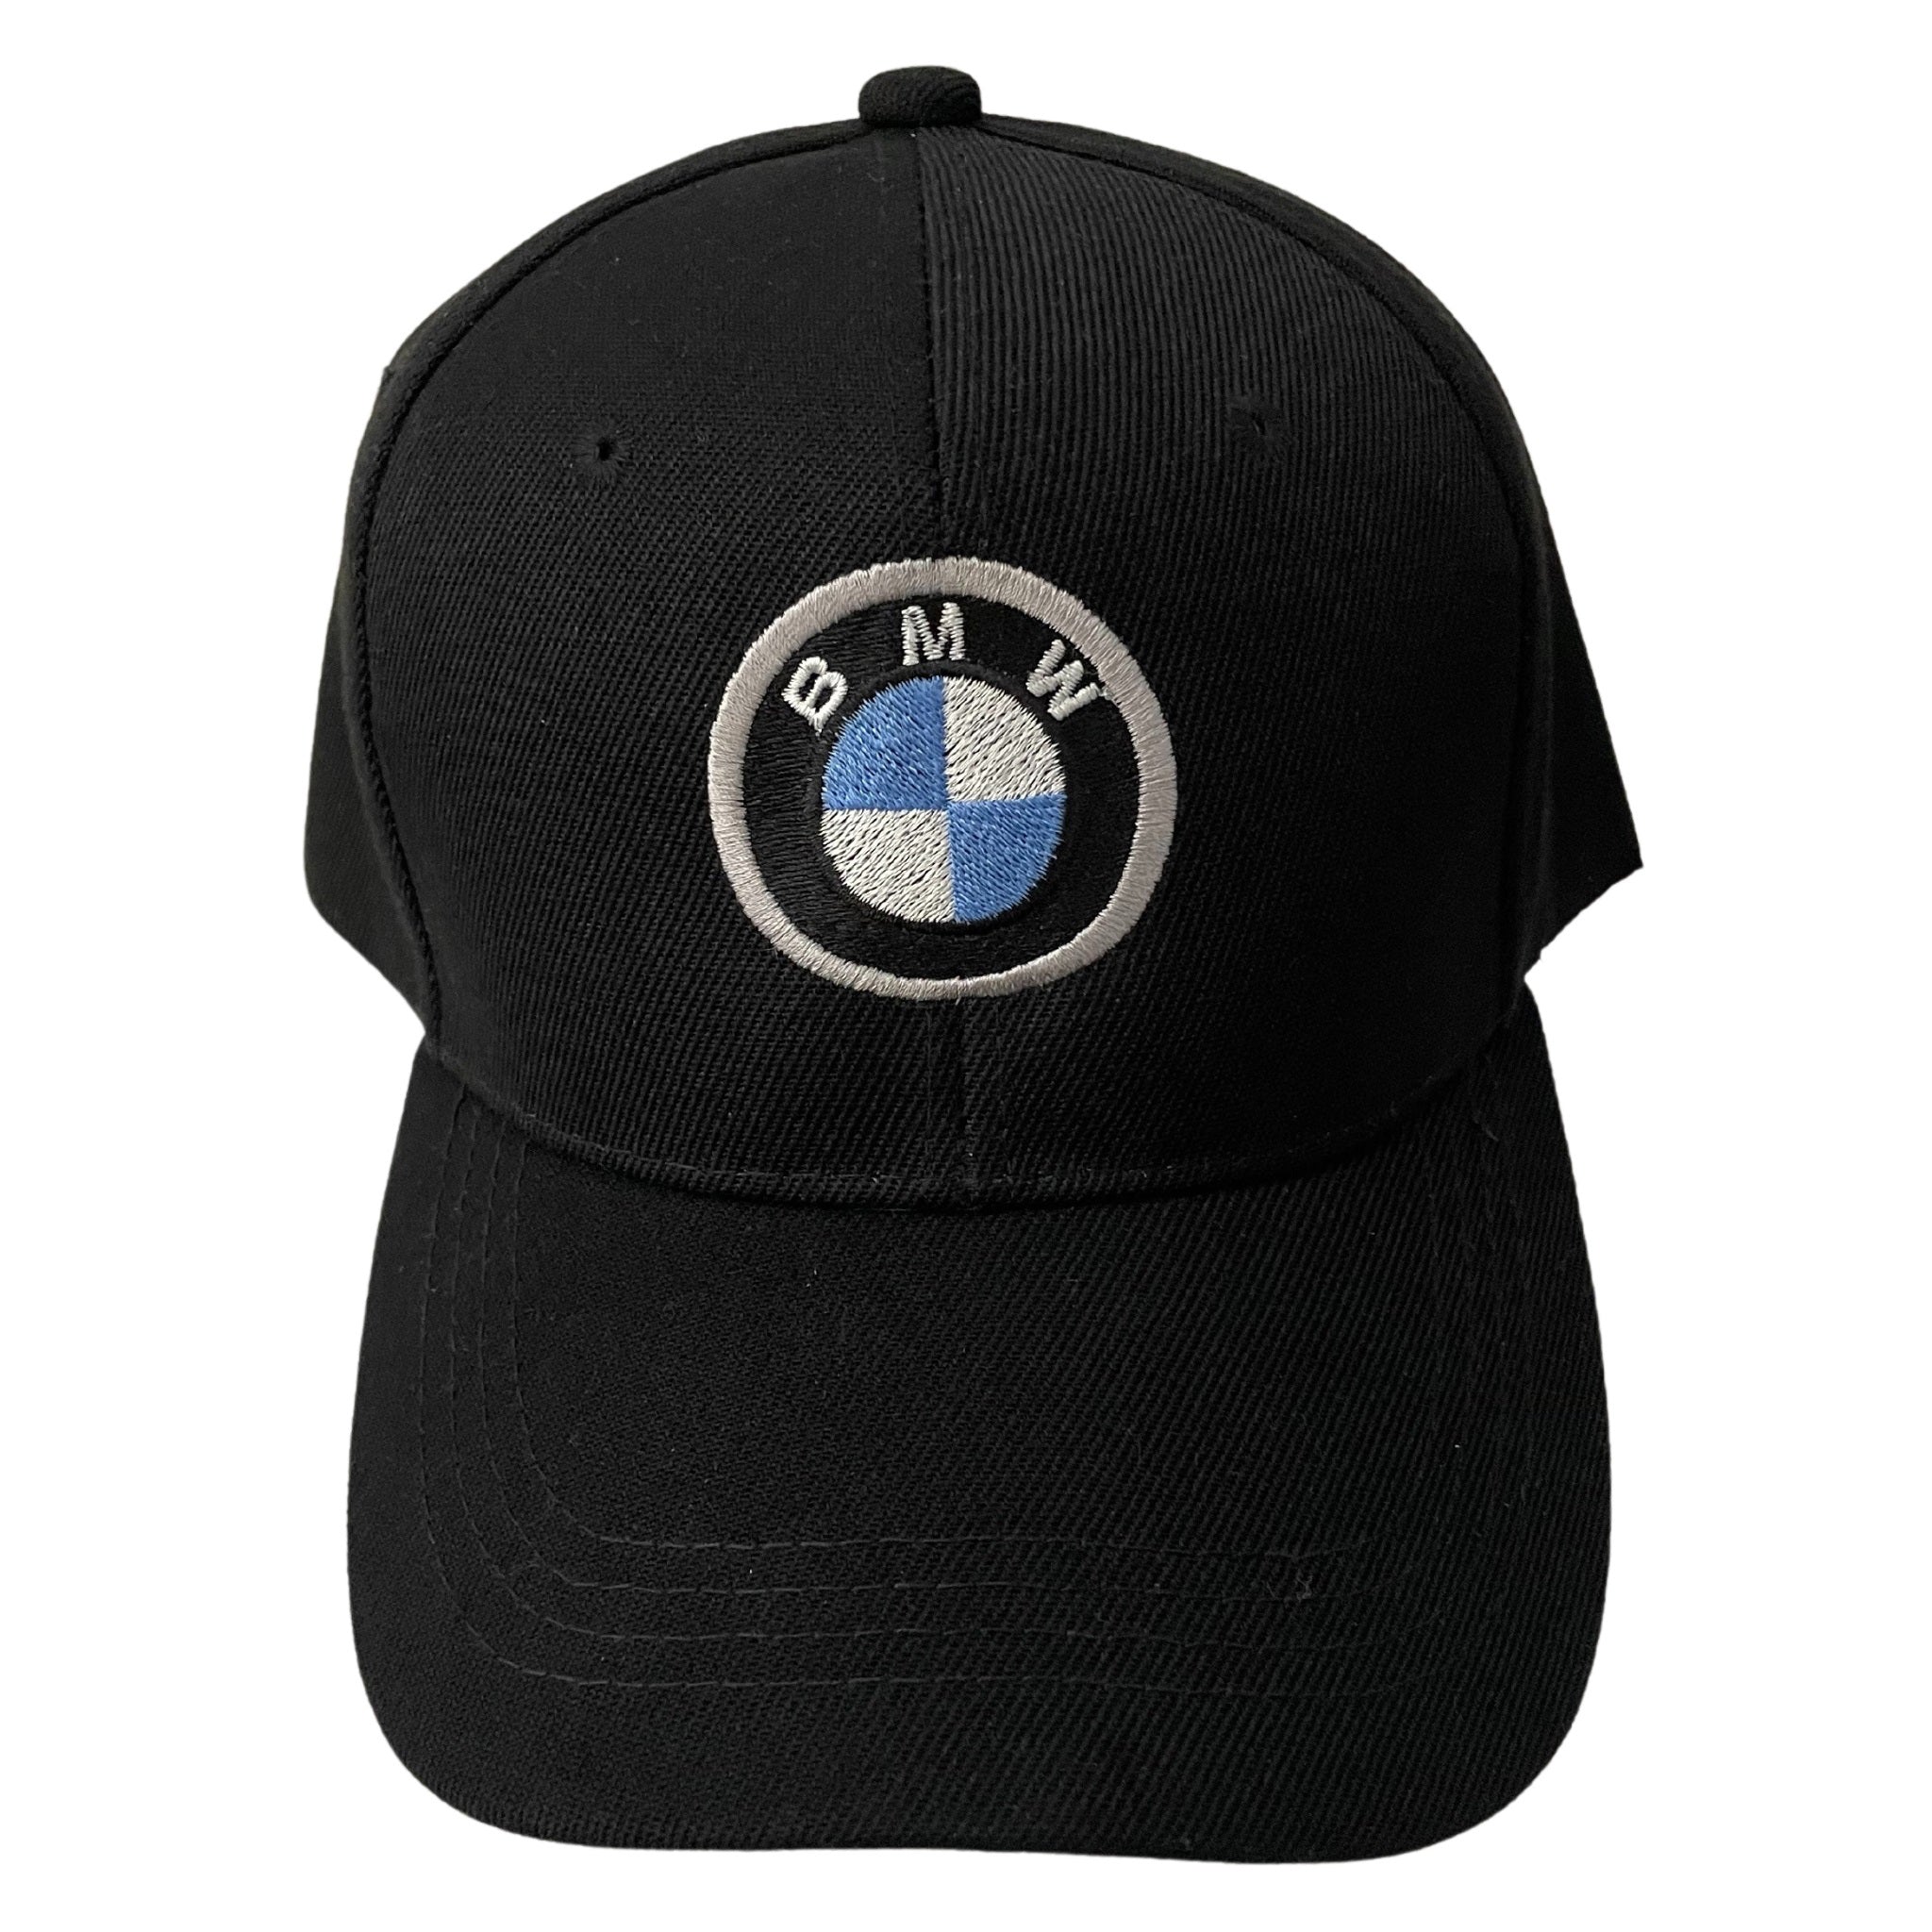 BMW Cap – Paddock Shop